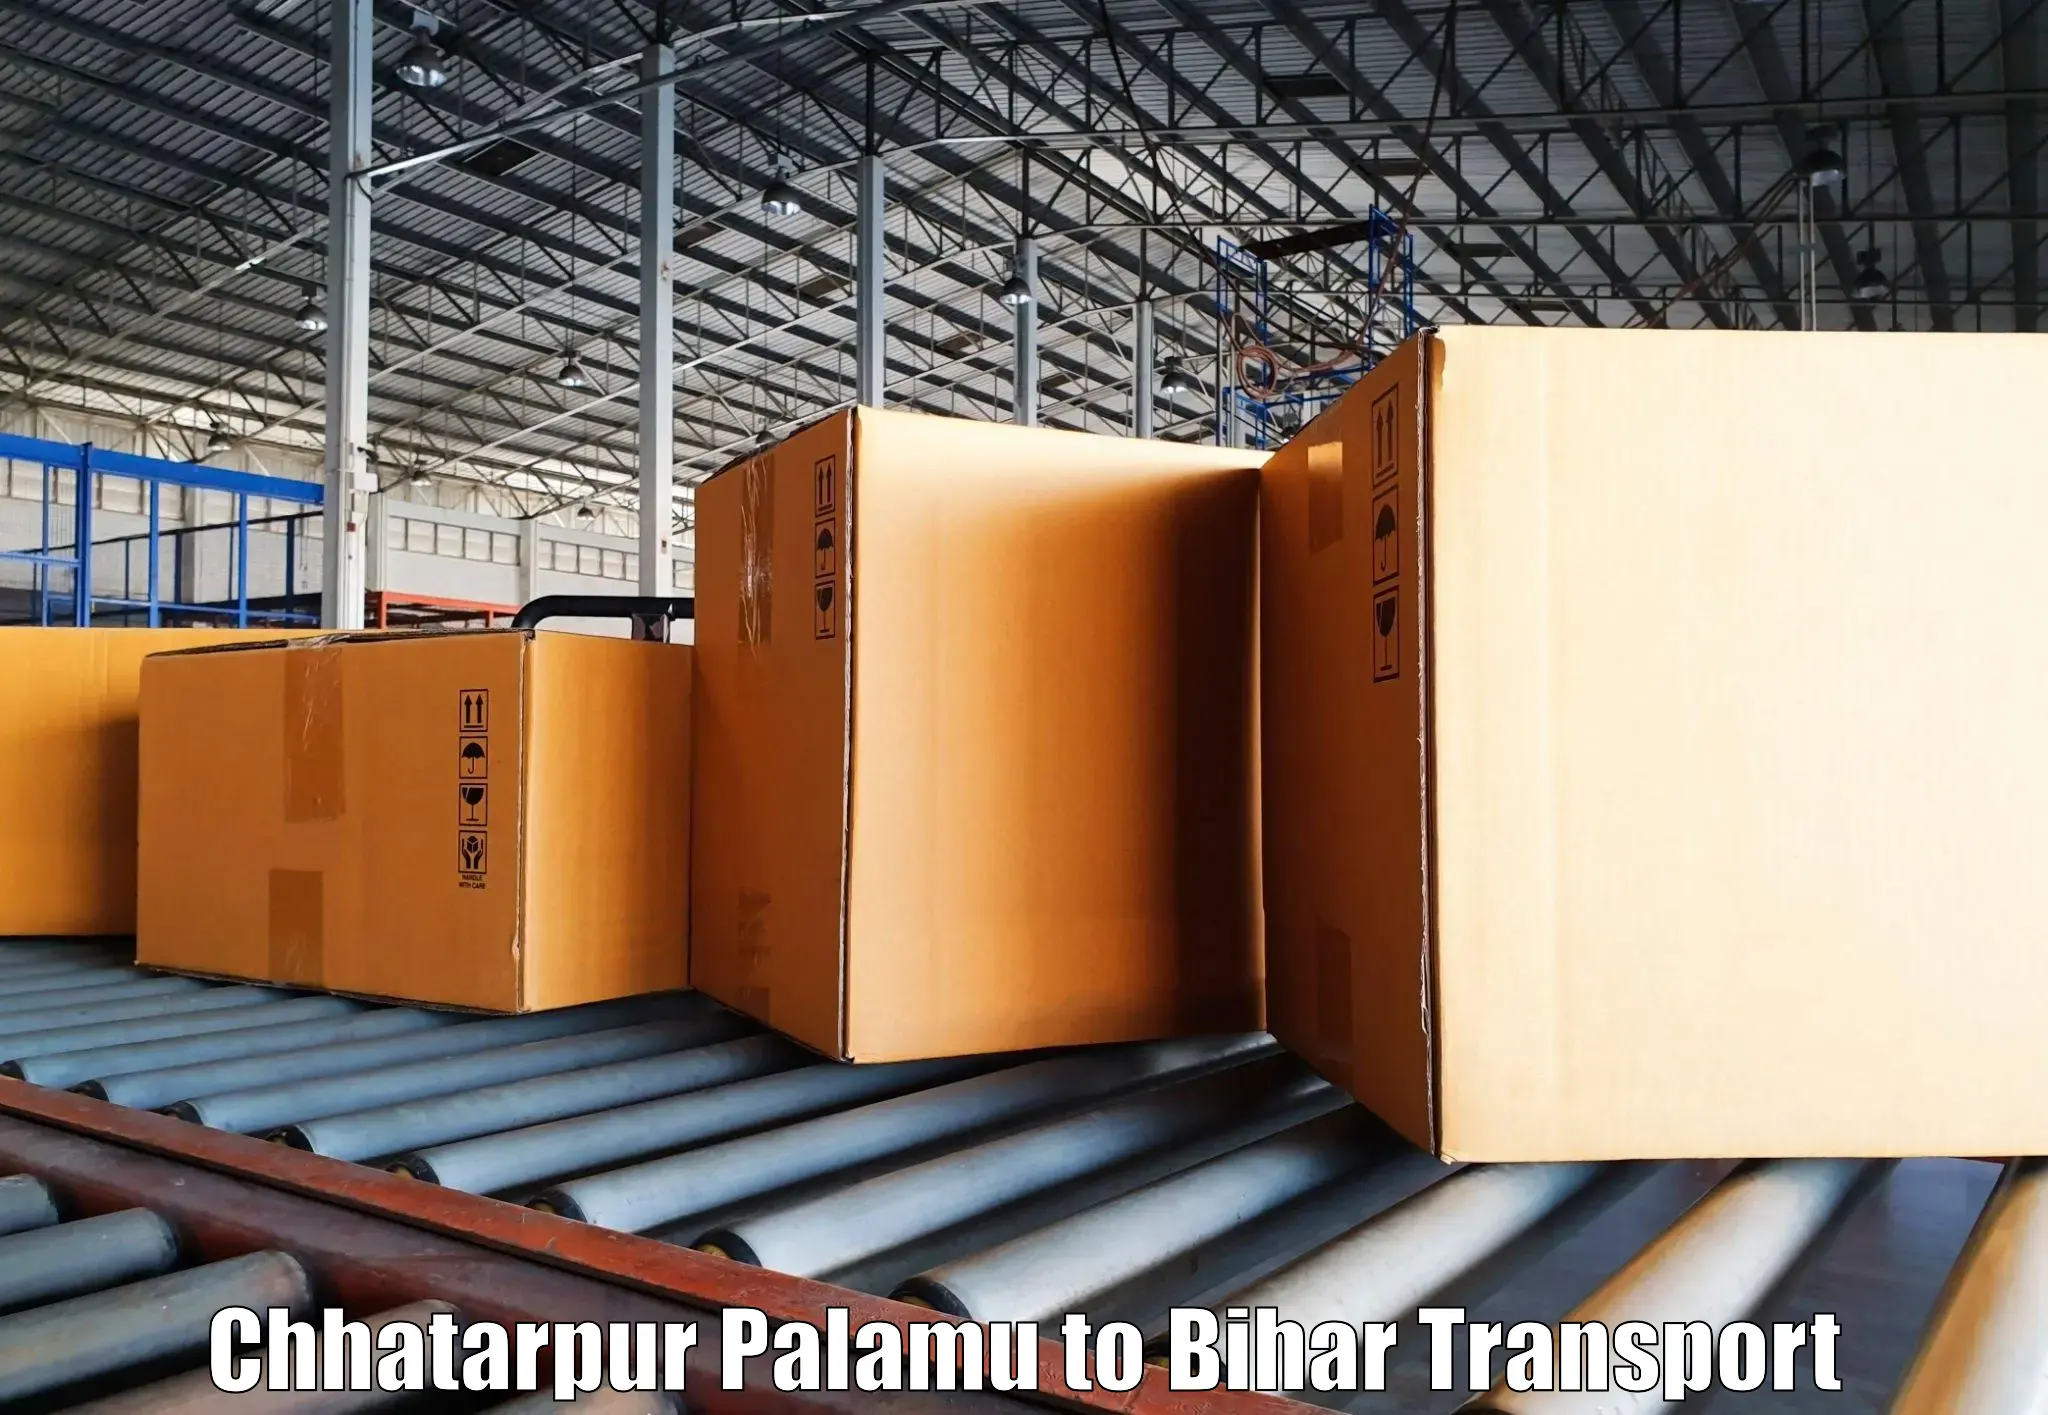 Shipping partner Chhatarpur Palamu to Biraul